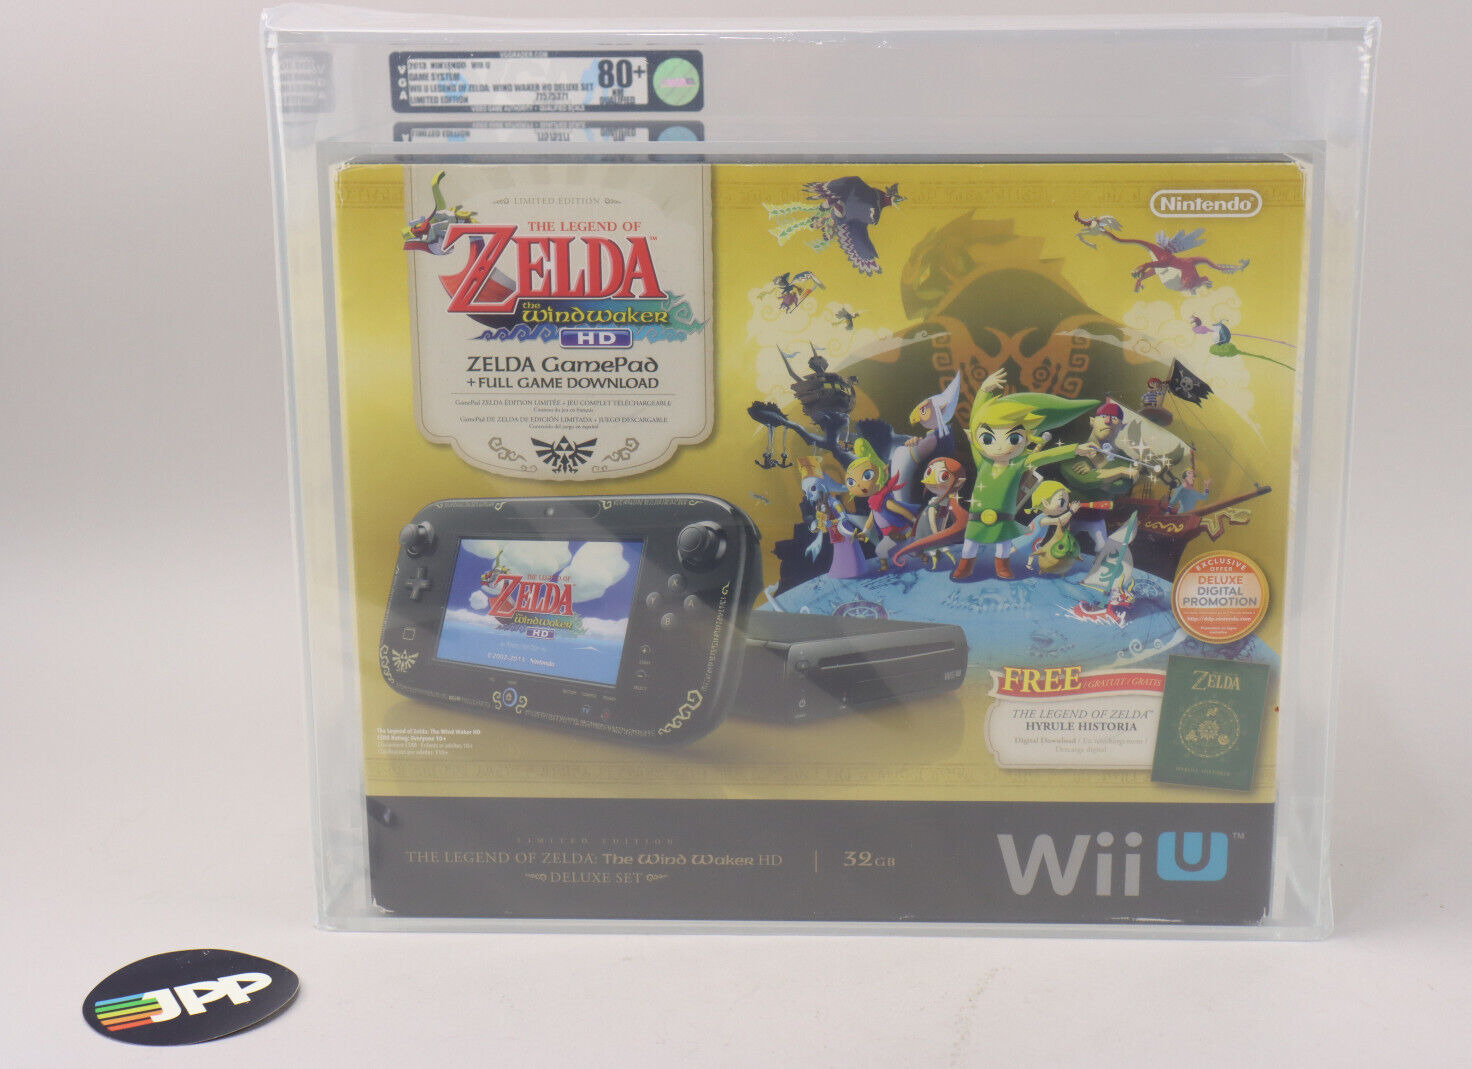 2013 Nintendo Wii U Legend of Zelda Wind Waker HD Deluxe Set VGA 80+ Qualified